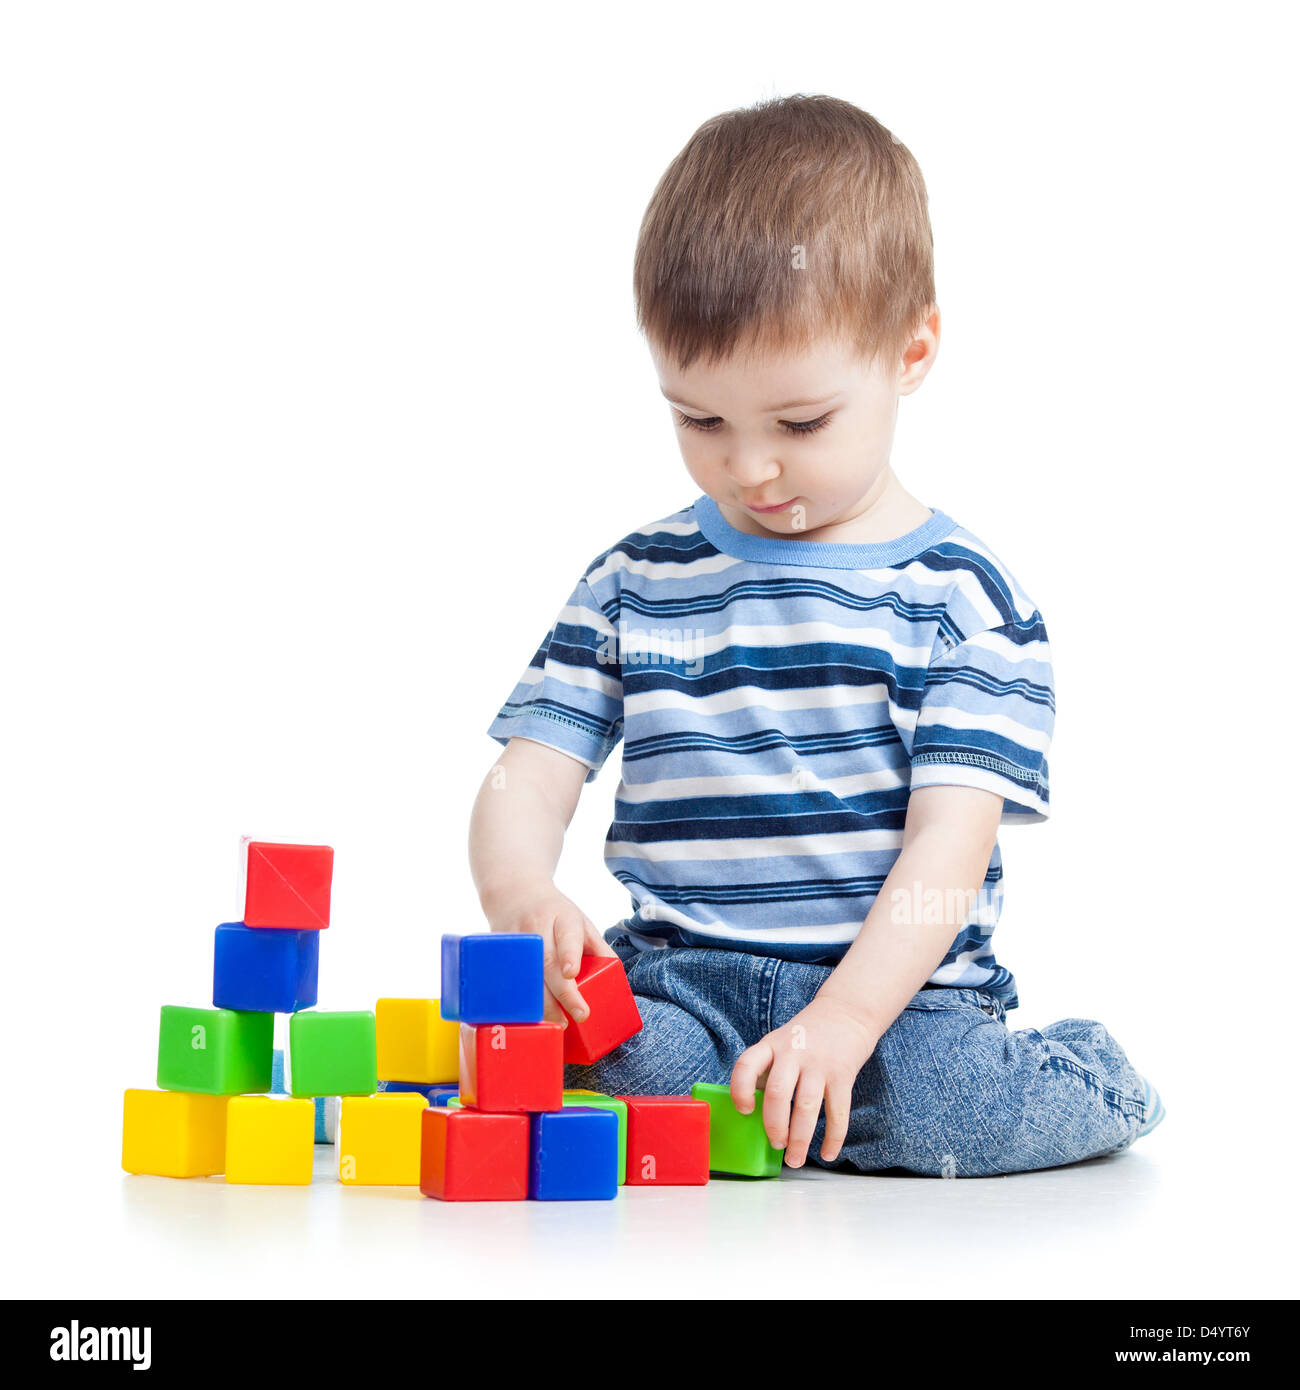 Kid Garçon jouant avec des briques ou des blocs de construction Banque D'Images